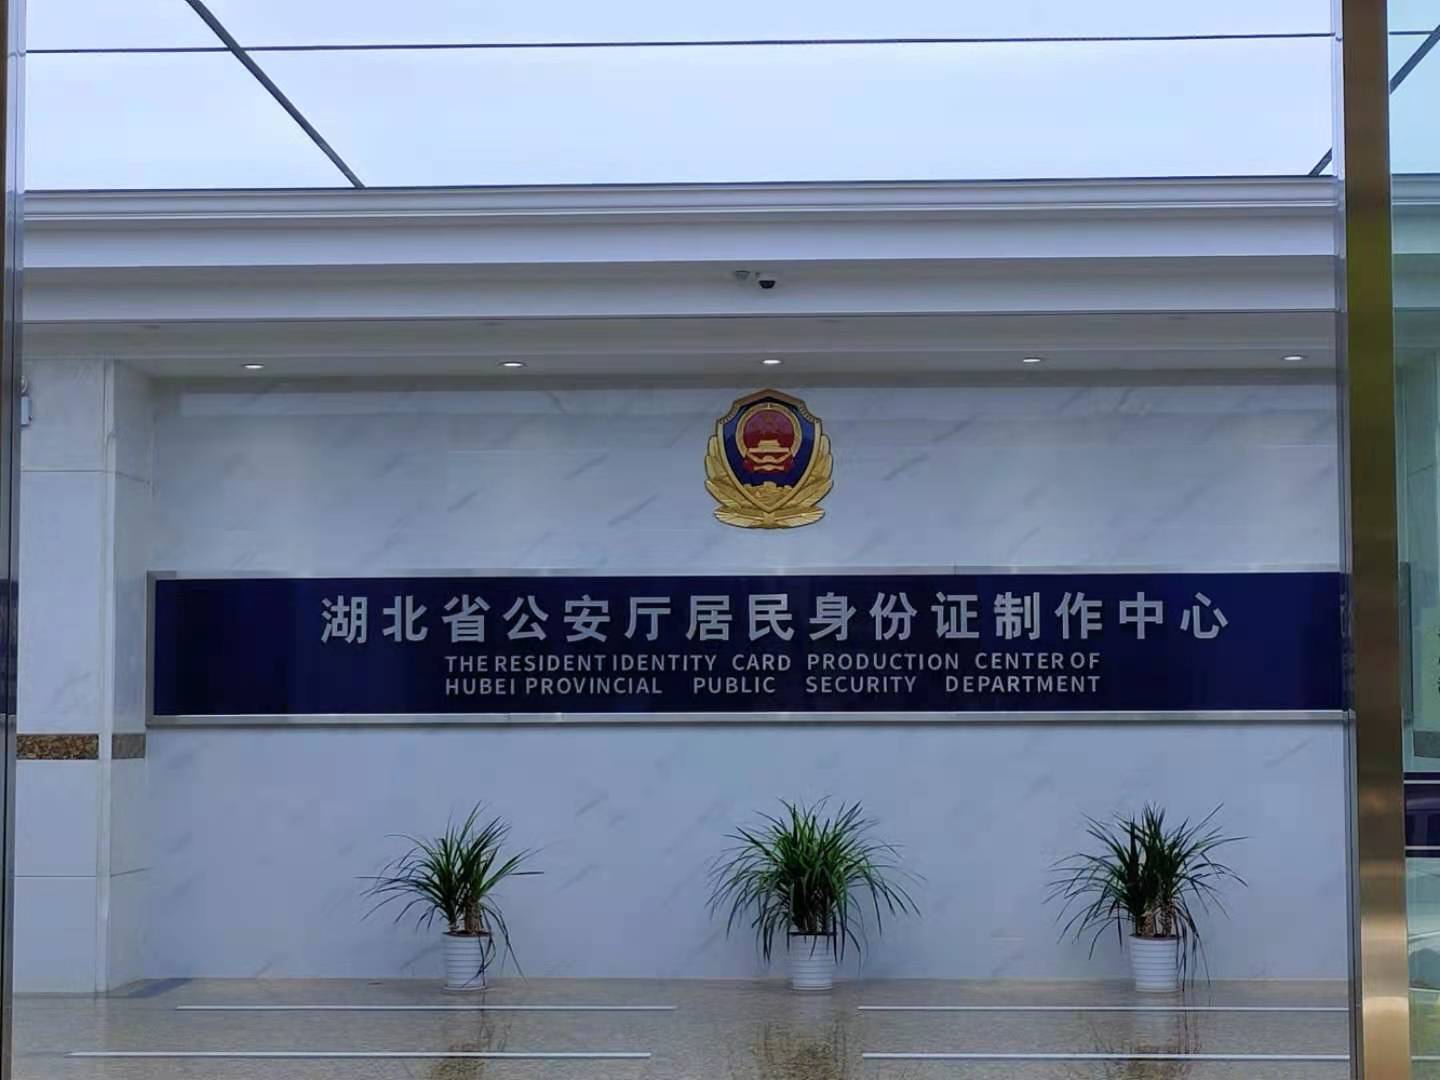 湖北省公安厅居民身份证制作中心